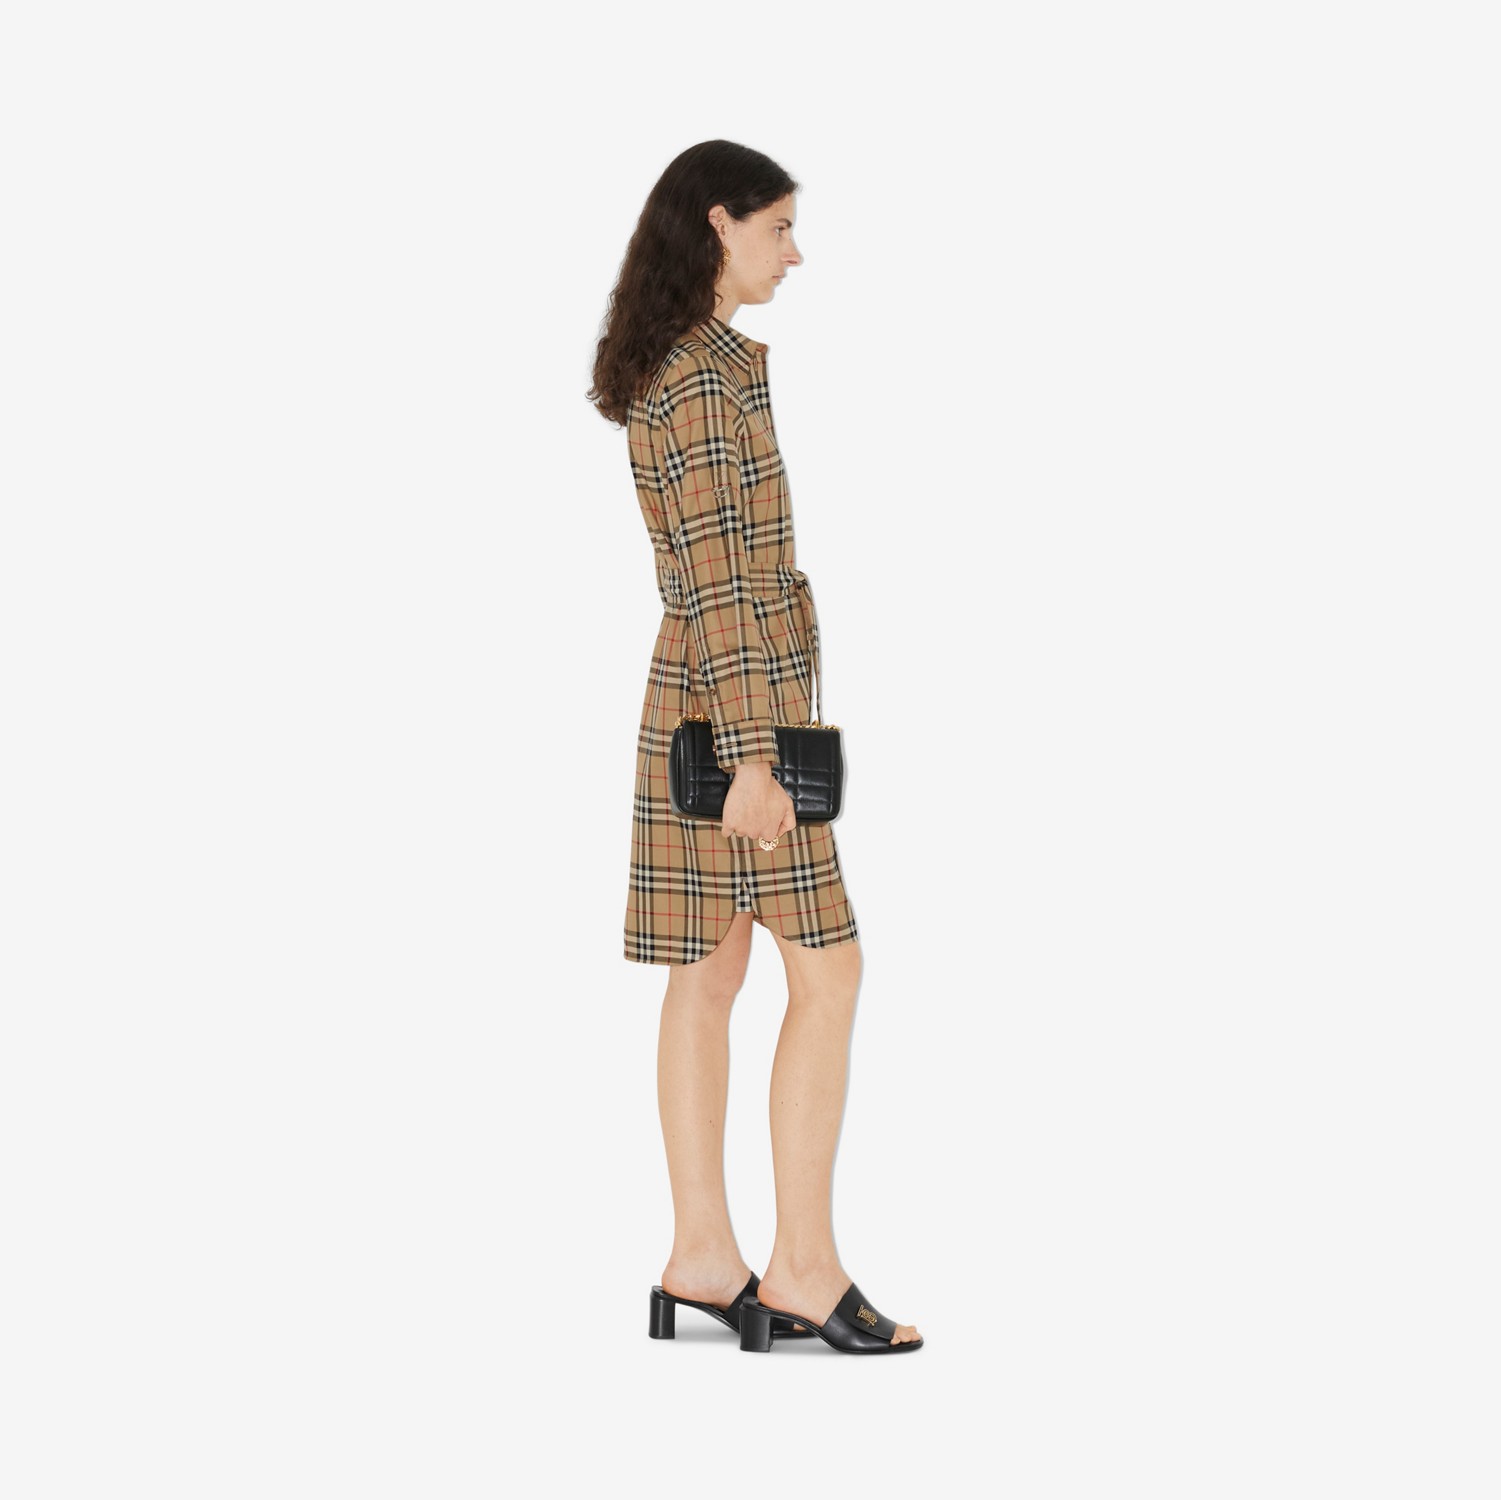 Vestido estilo camisa de algodão com estampa xadrez (Bege Clássico) - Mulheres | Burberry® oficial